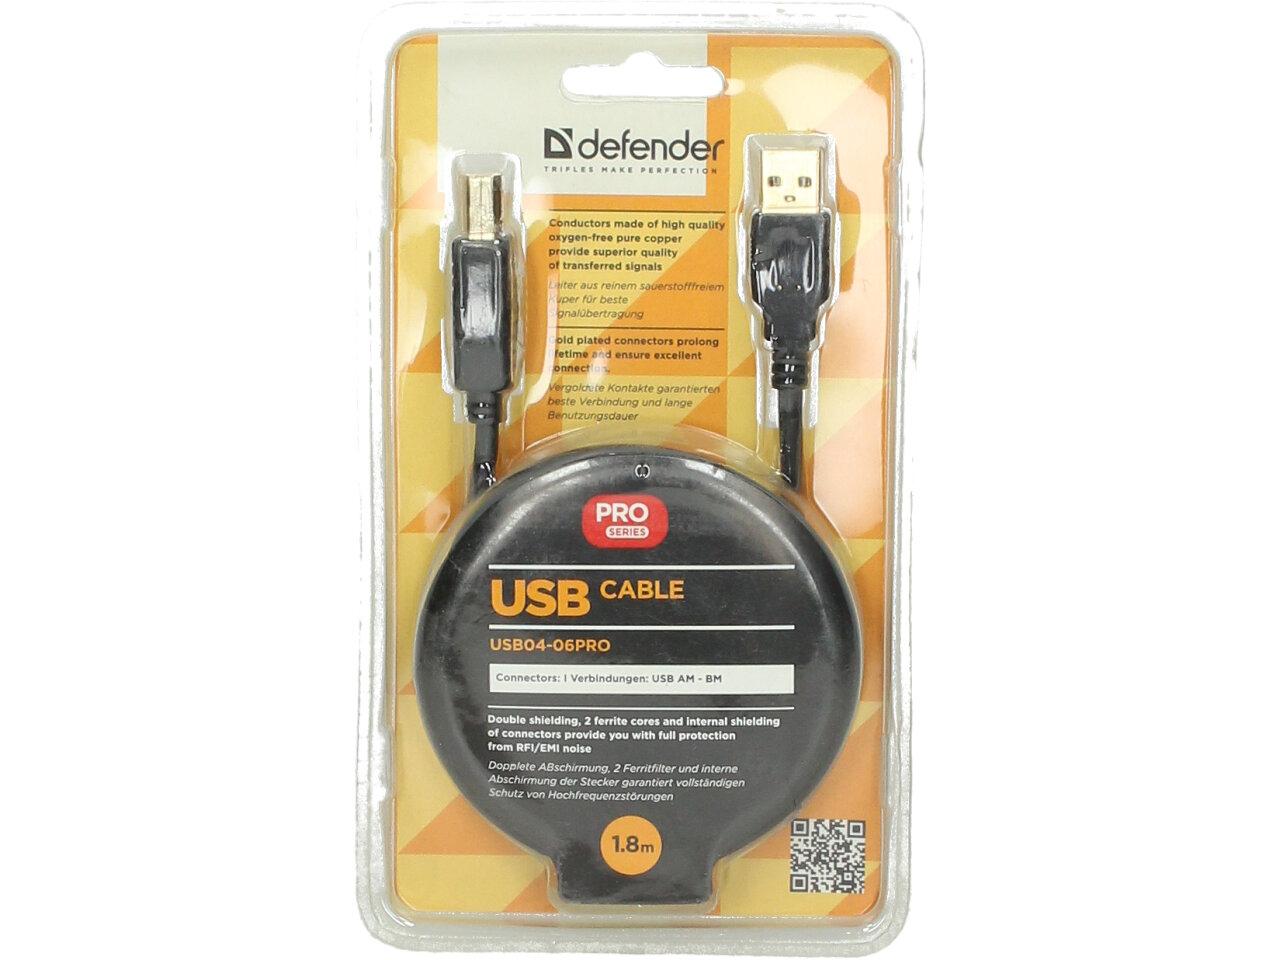 Datový kabel USB pro tiskárny a jiná zařízení s USB-B konektorem